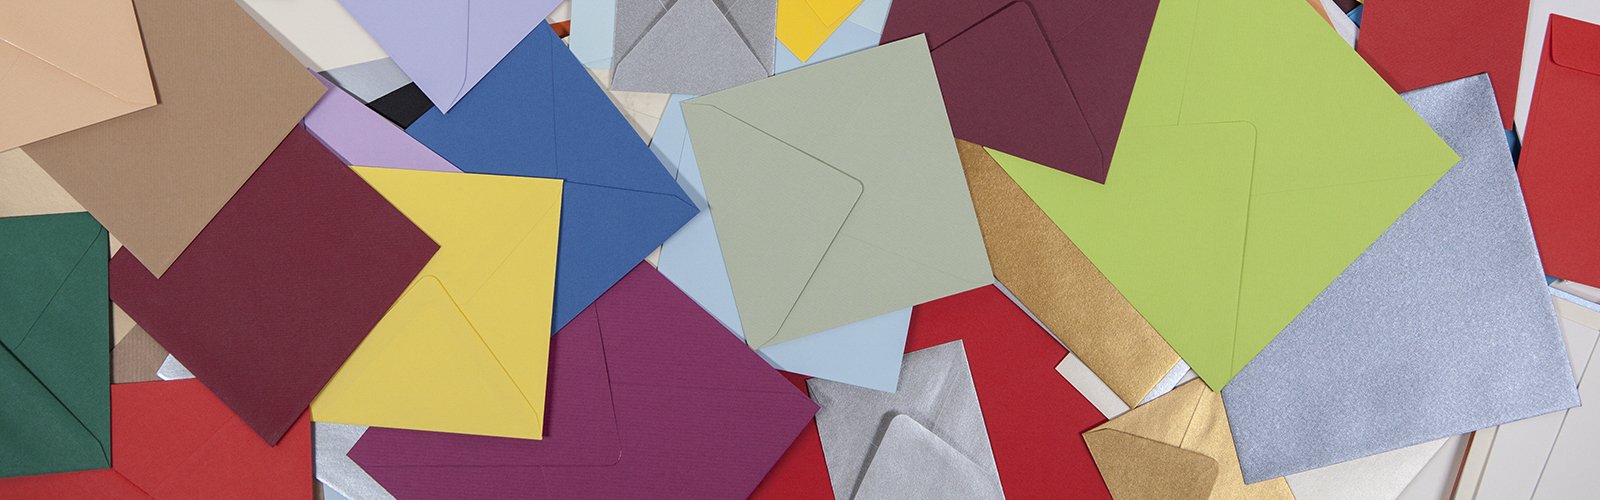 Farbige quadratische Briefumschläge